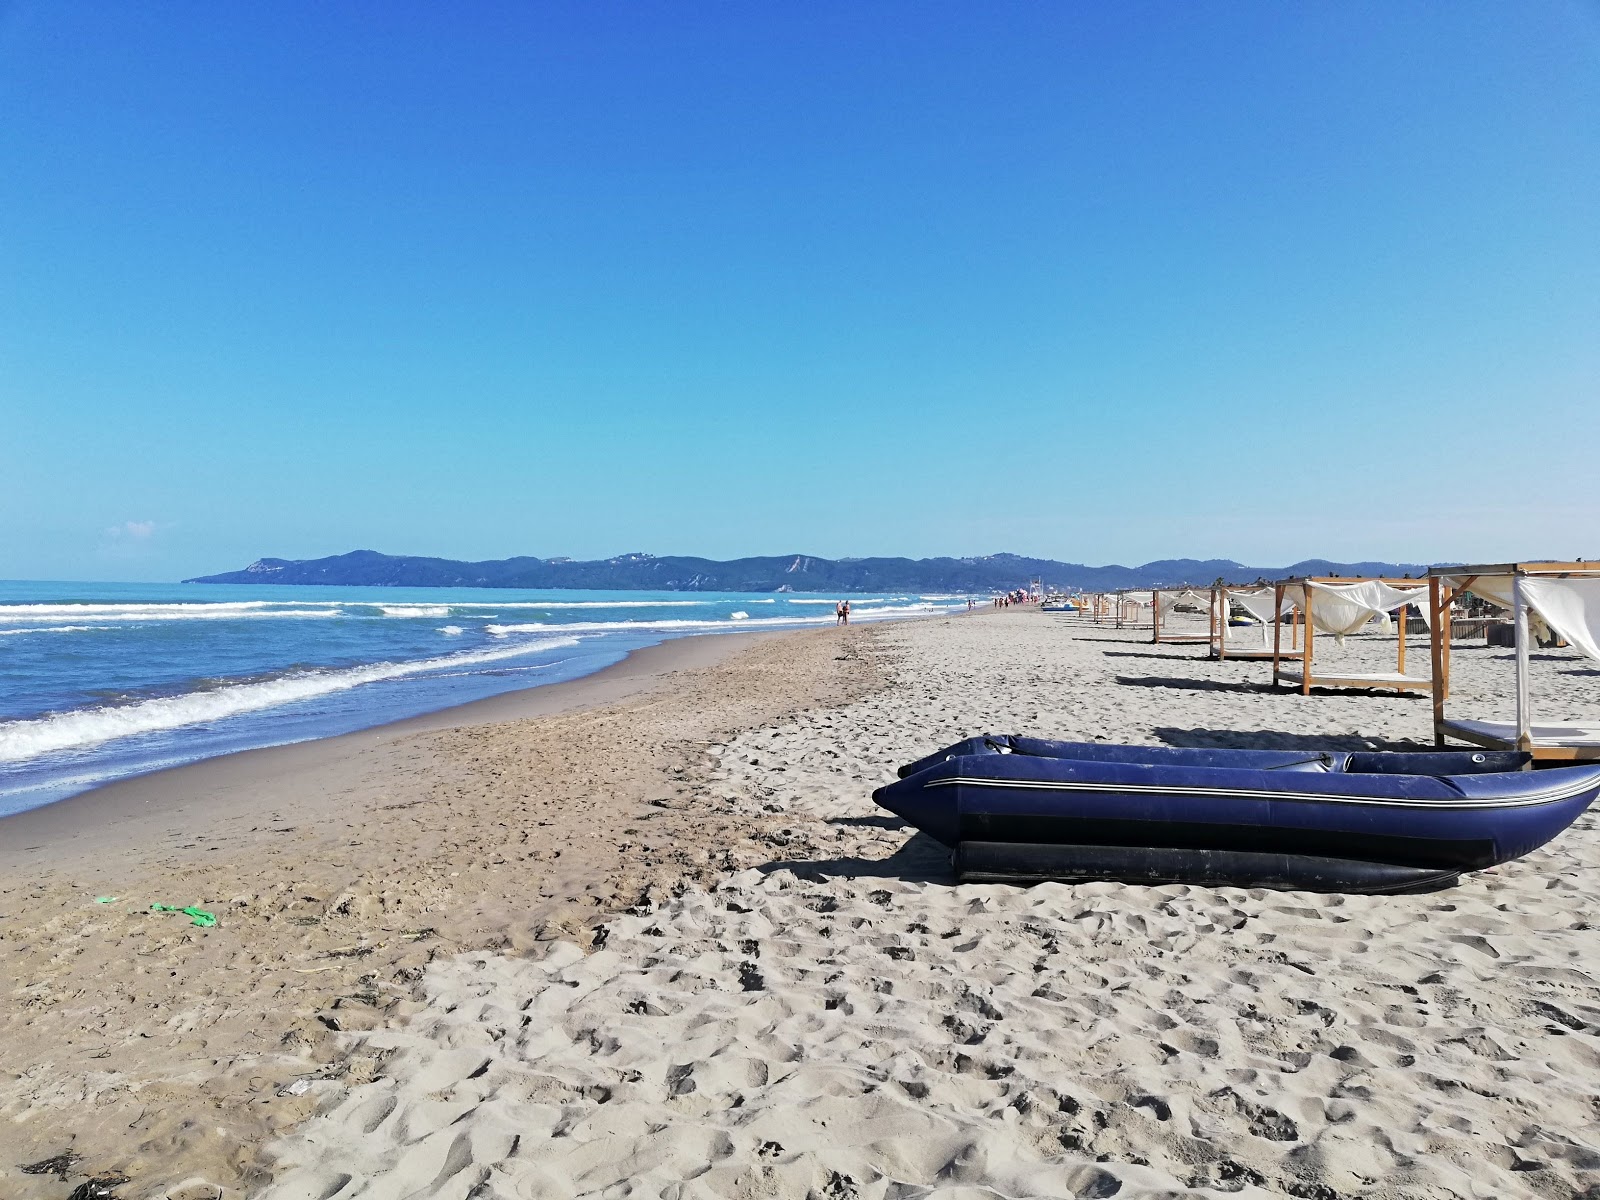 Zdjęcie Ibiza beach z przestronna plaża